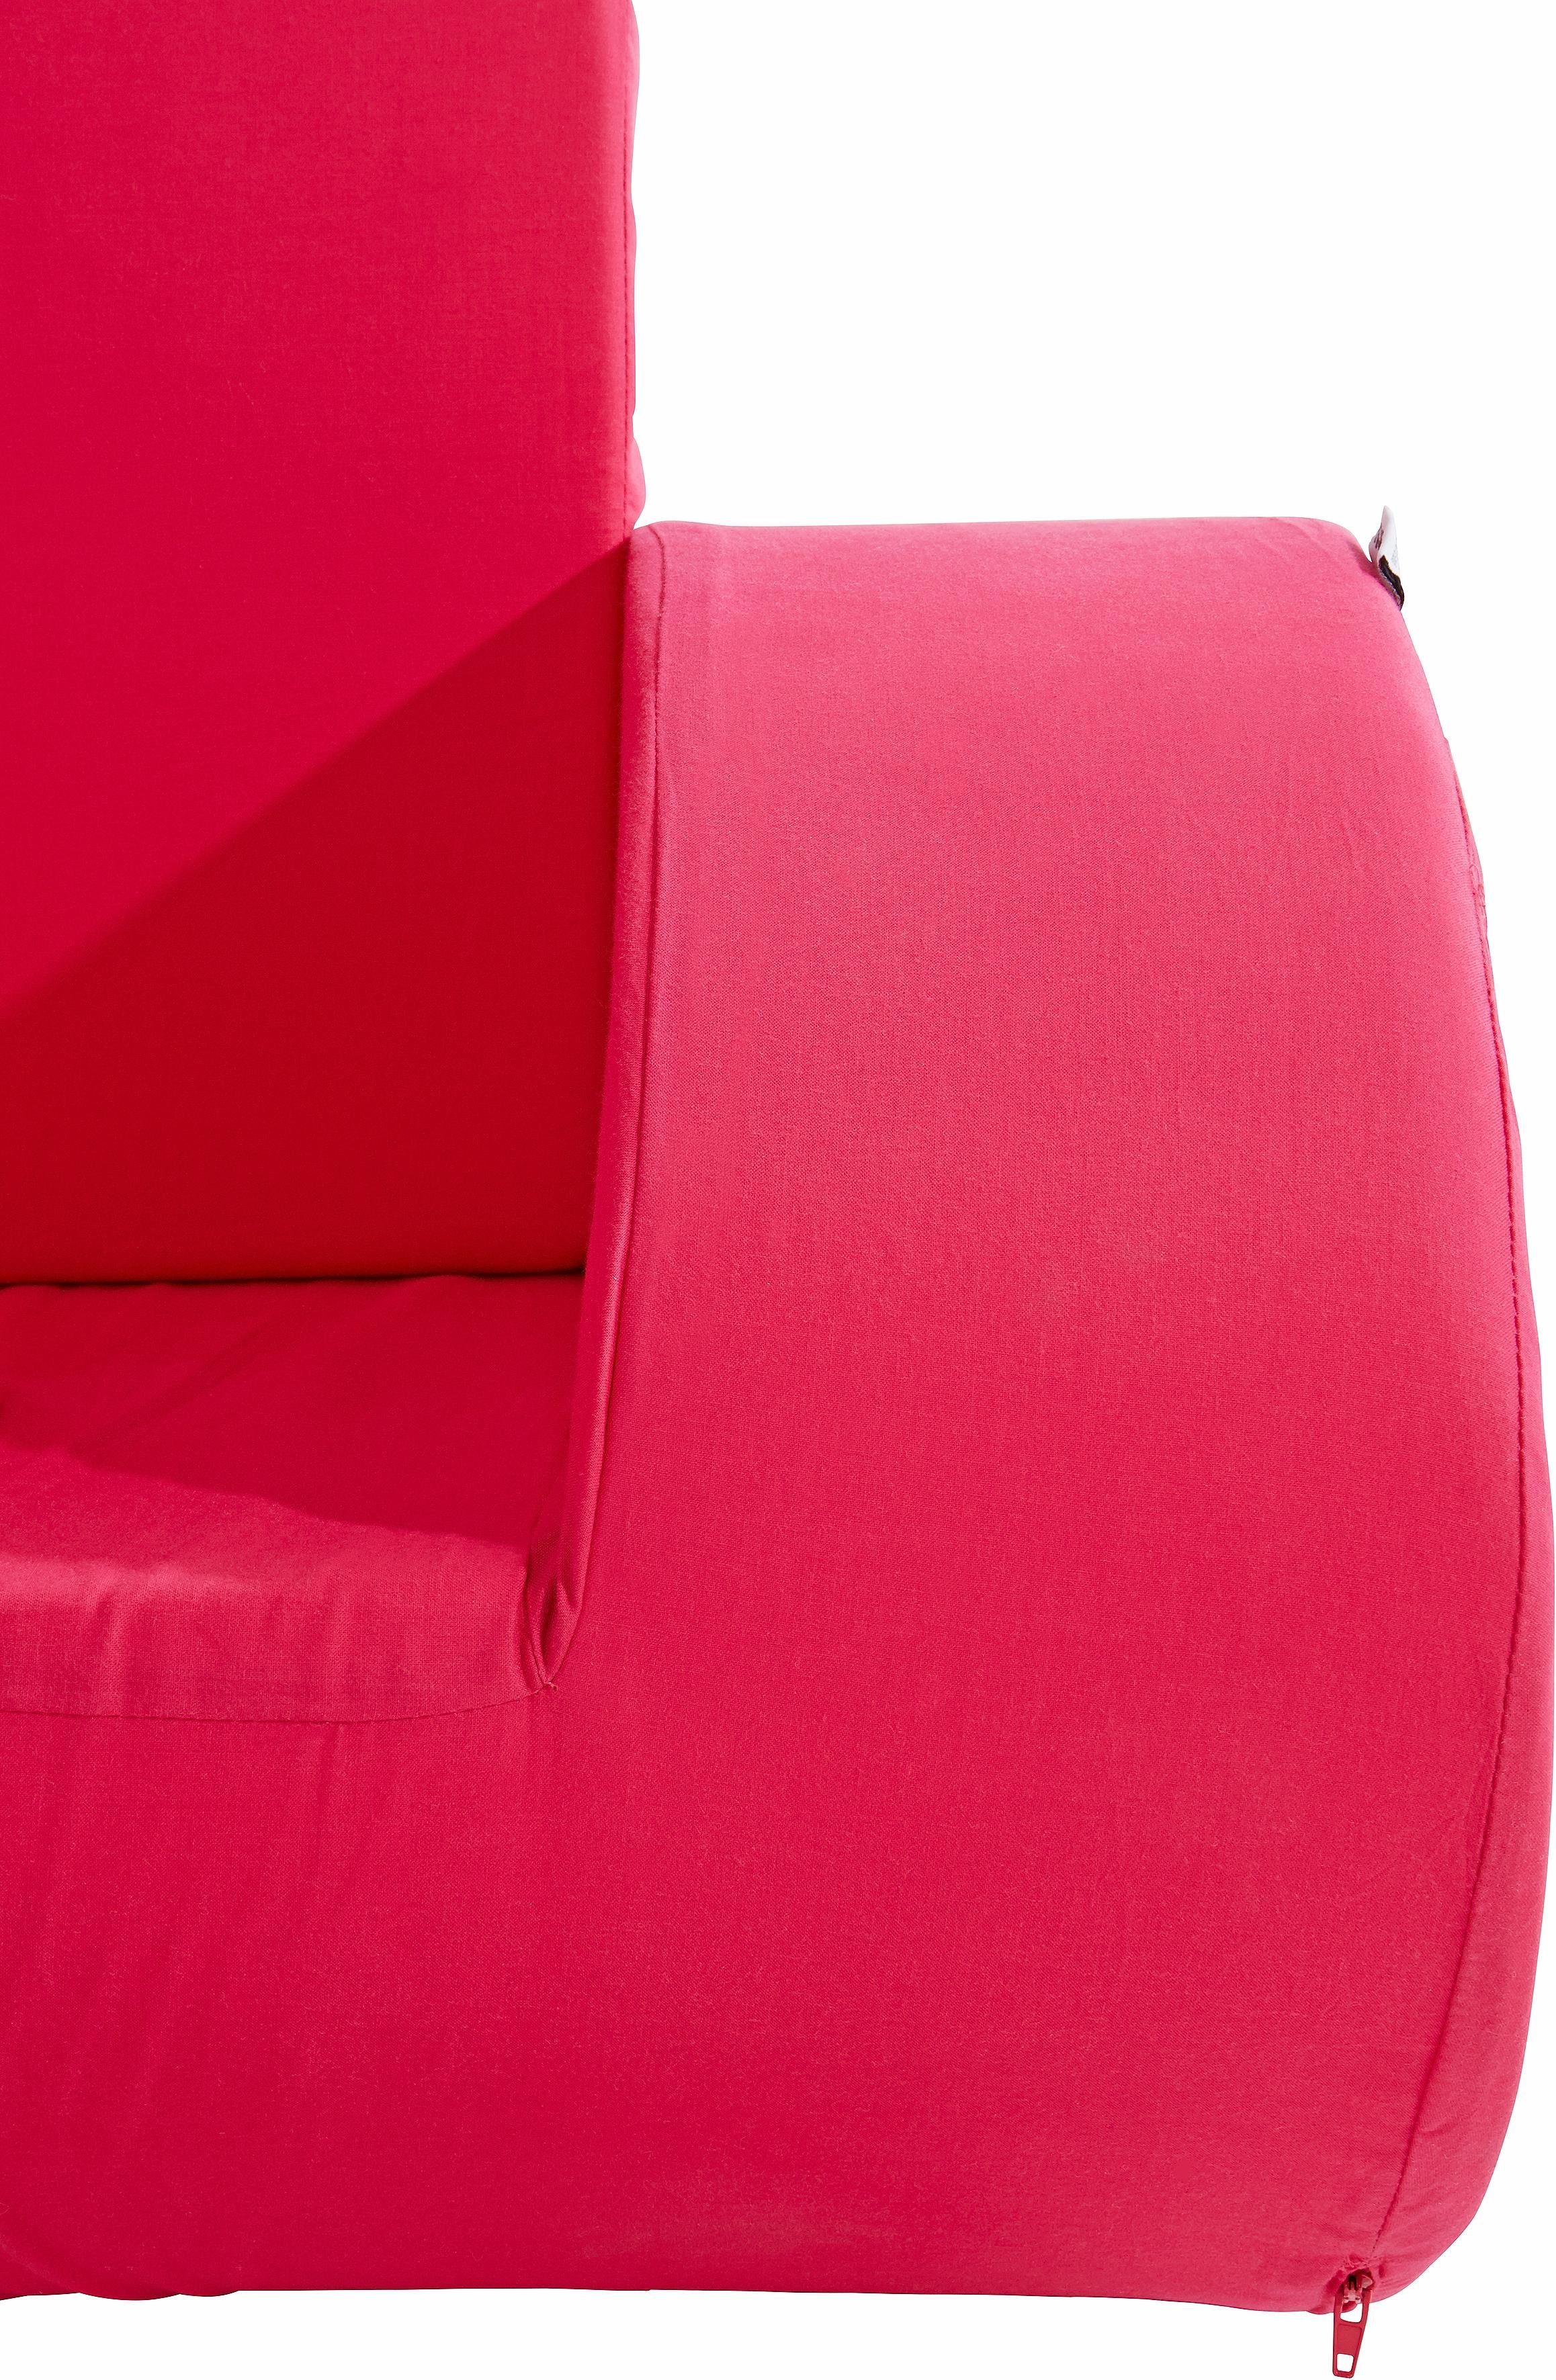 in 2 Sessel, Schaukelstuhl Kindersessel pink Farben Hoppekids